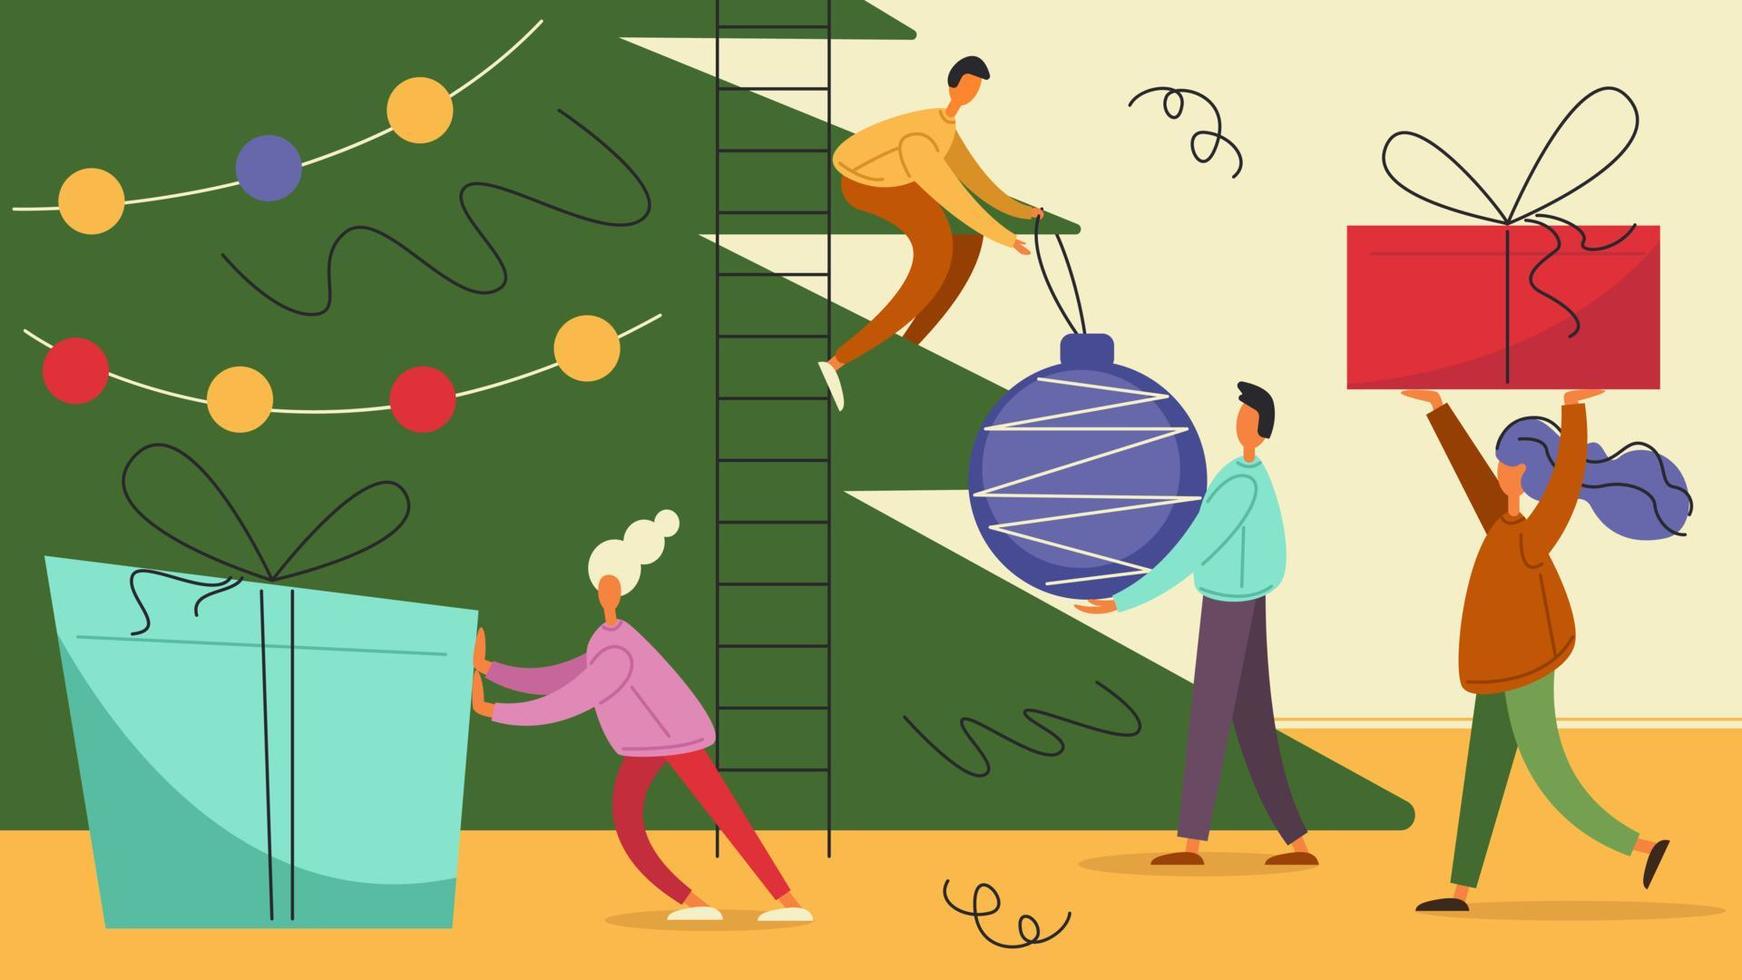 piccole persone decorano l'albero di natale e preparano regali per il nuovo anno e il natale. illustrazione stock vettoriale in stile piatto.